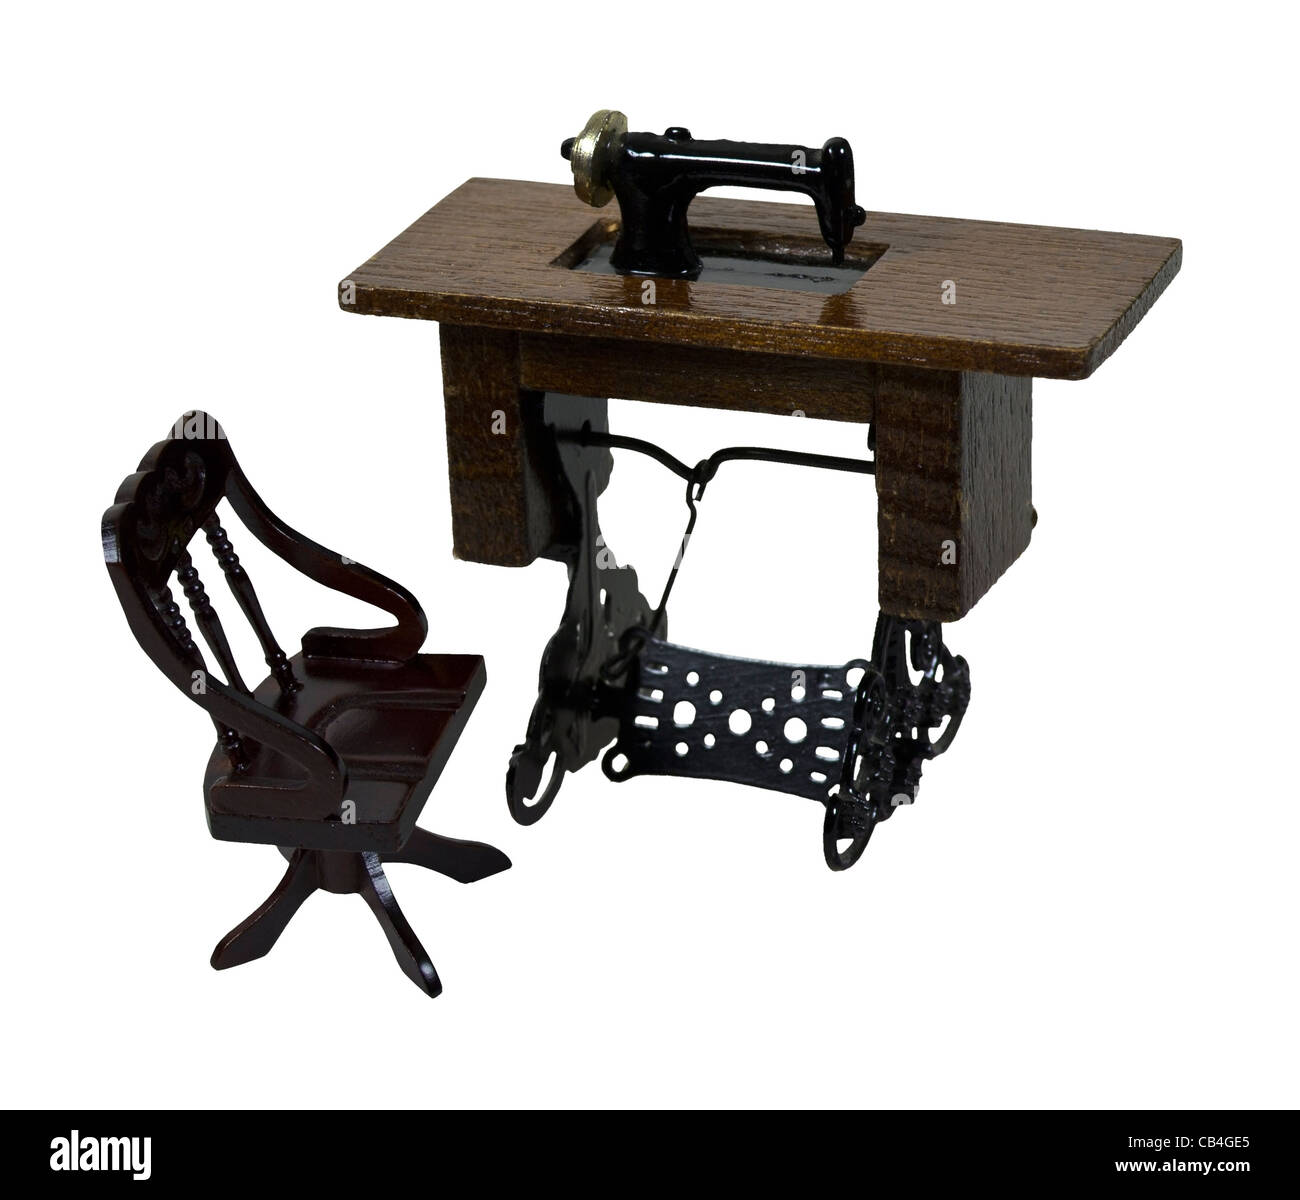 Antiker Tisch Nähmaschine mit Fußpedal und Stuhl - Pfad enthalten  Stockfotografie - Alamy